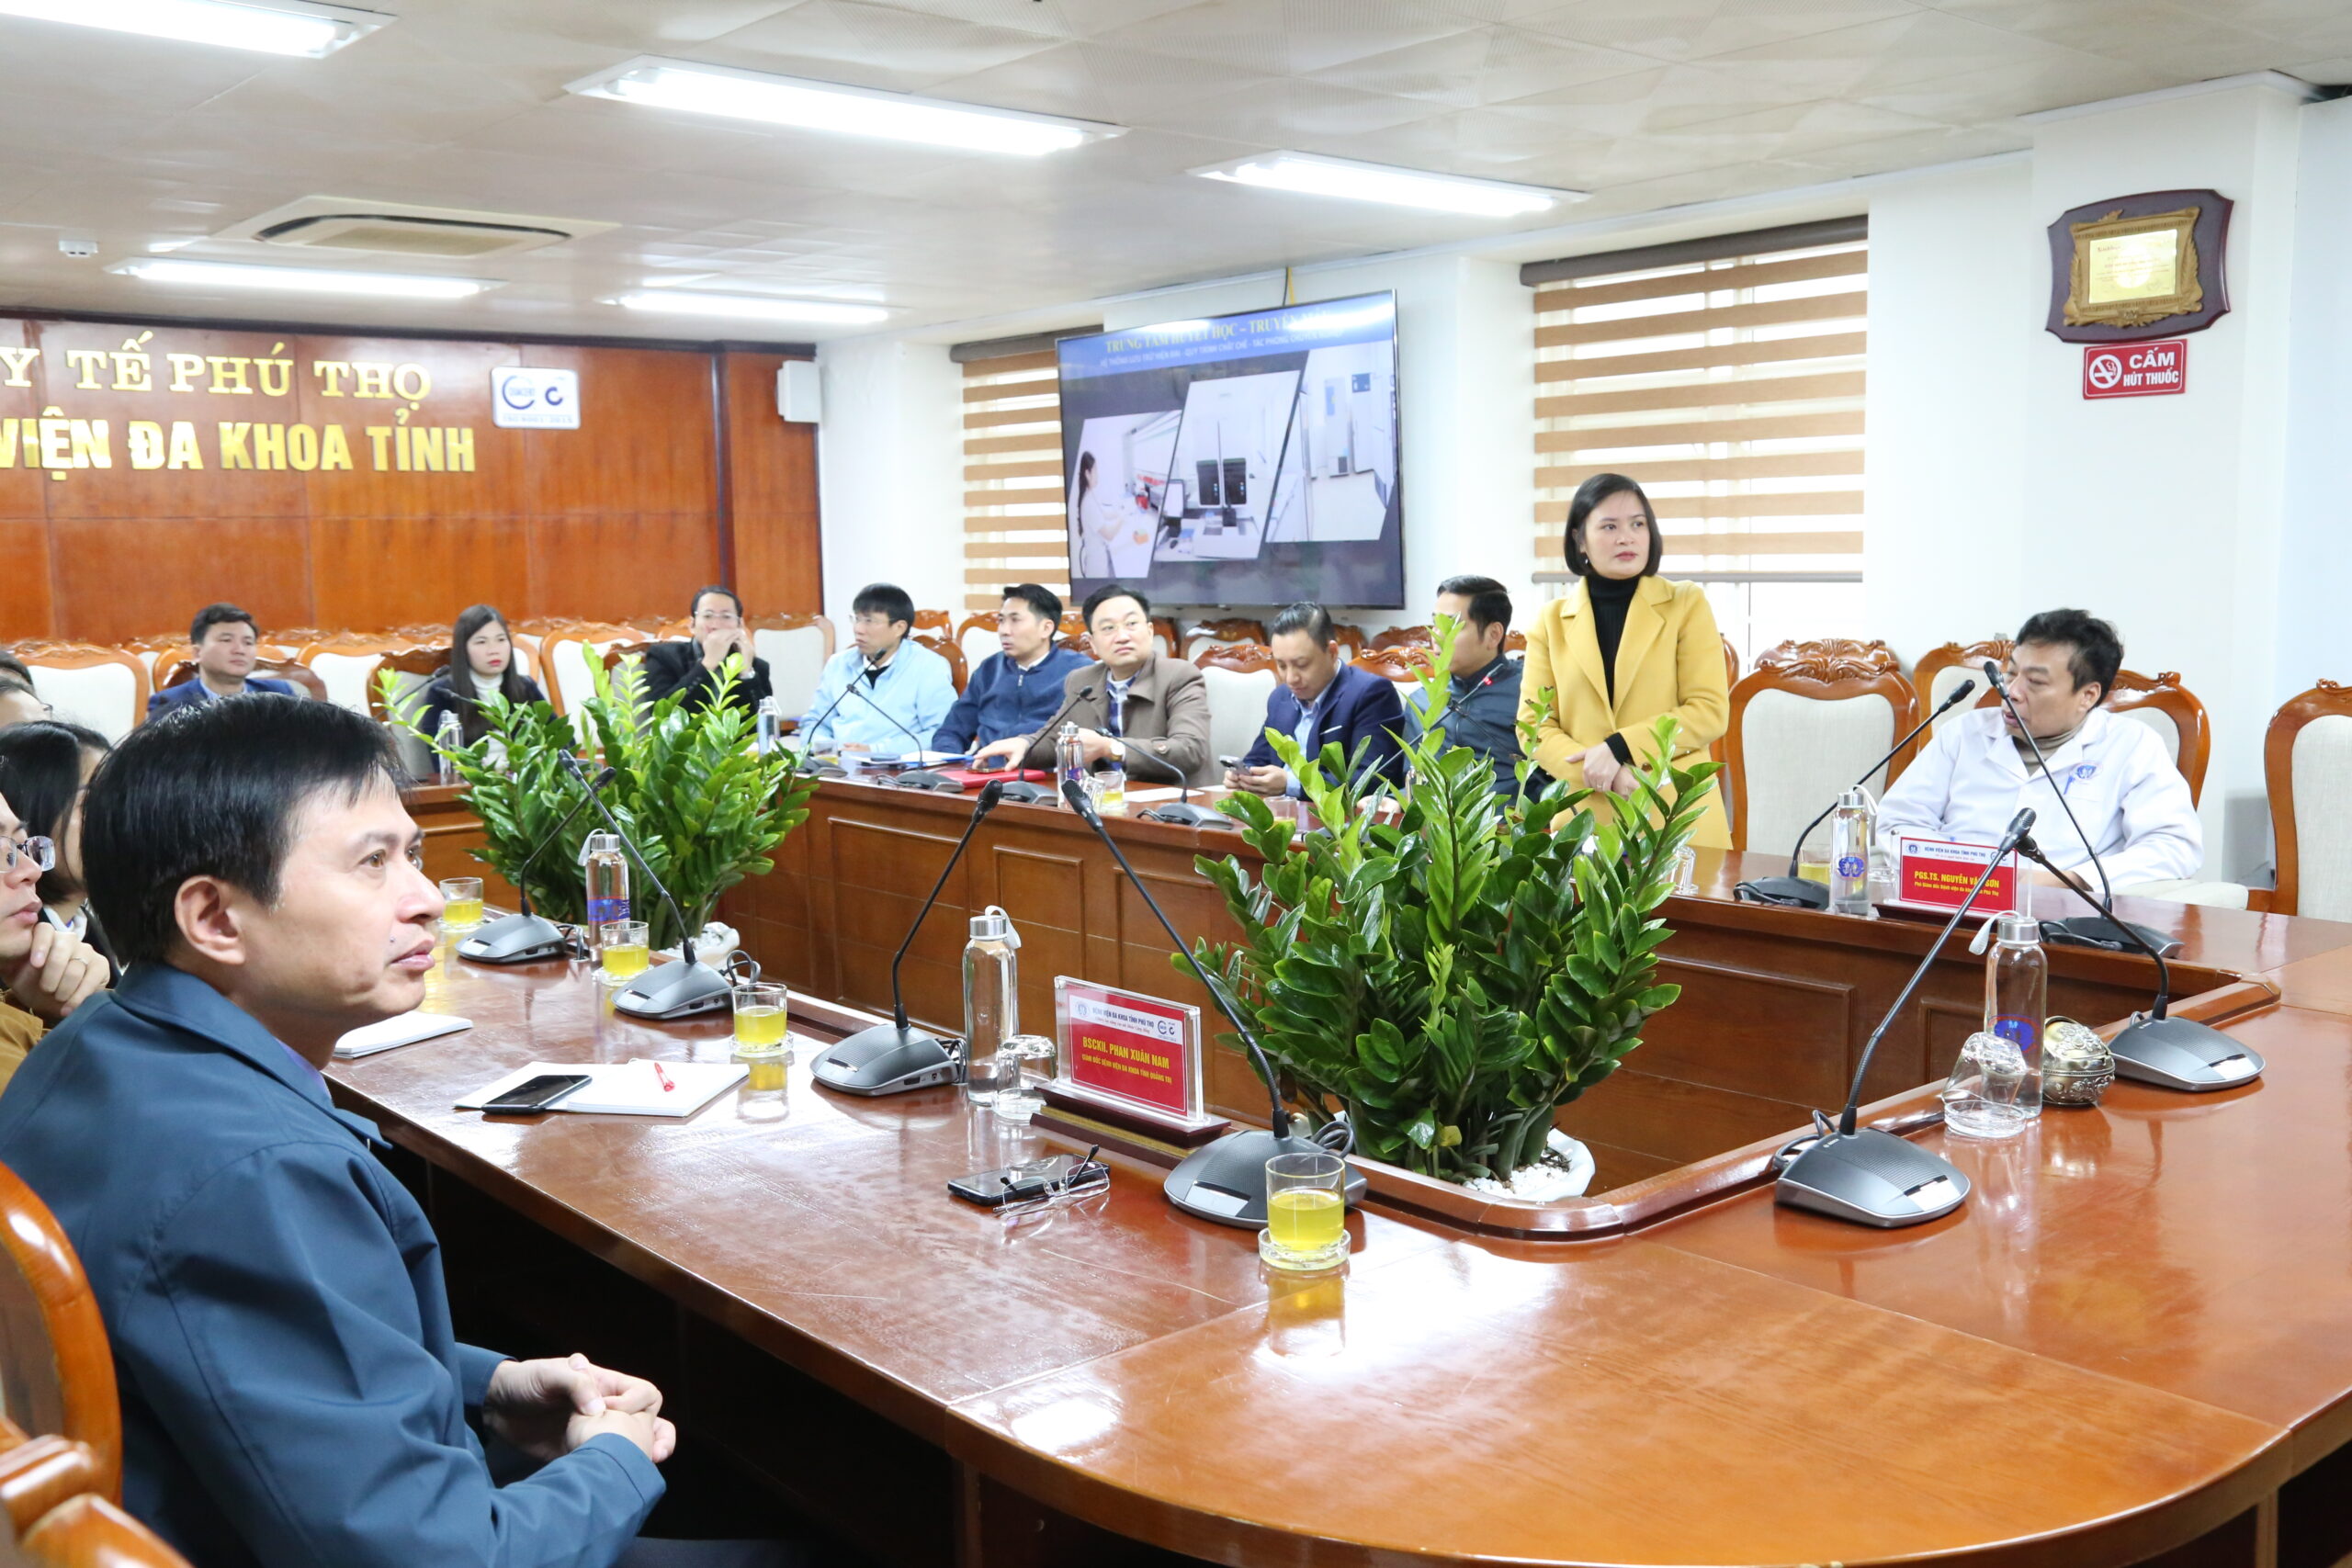 BSCKII Trần Thị Hương Lan – Phó Giám đốc Trung tâm Đào tạo và Chỉ đạo tuyến – Bệnh viện đa khoa tỉnh Phú Thọ phát biểu tại chương trình.